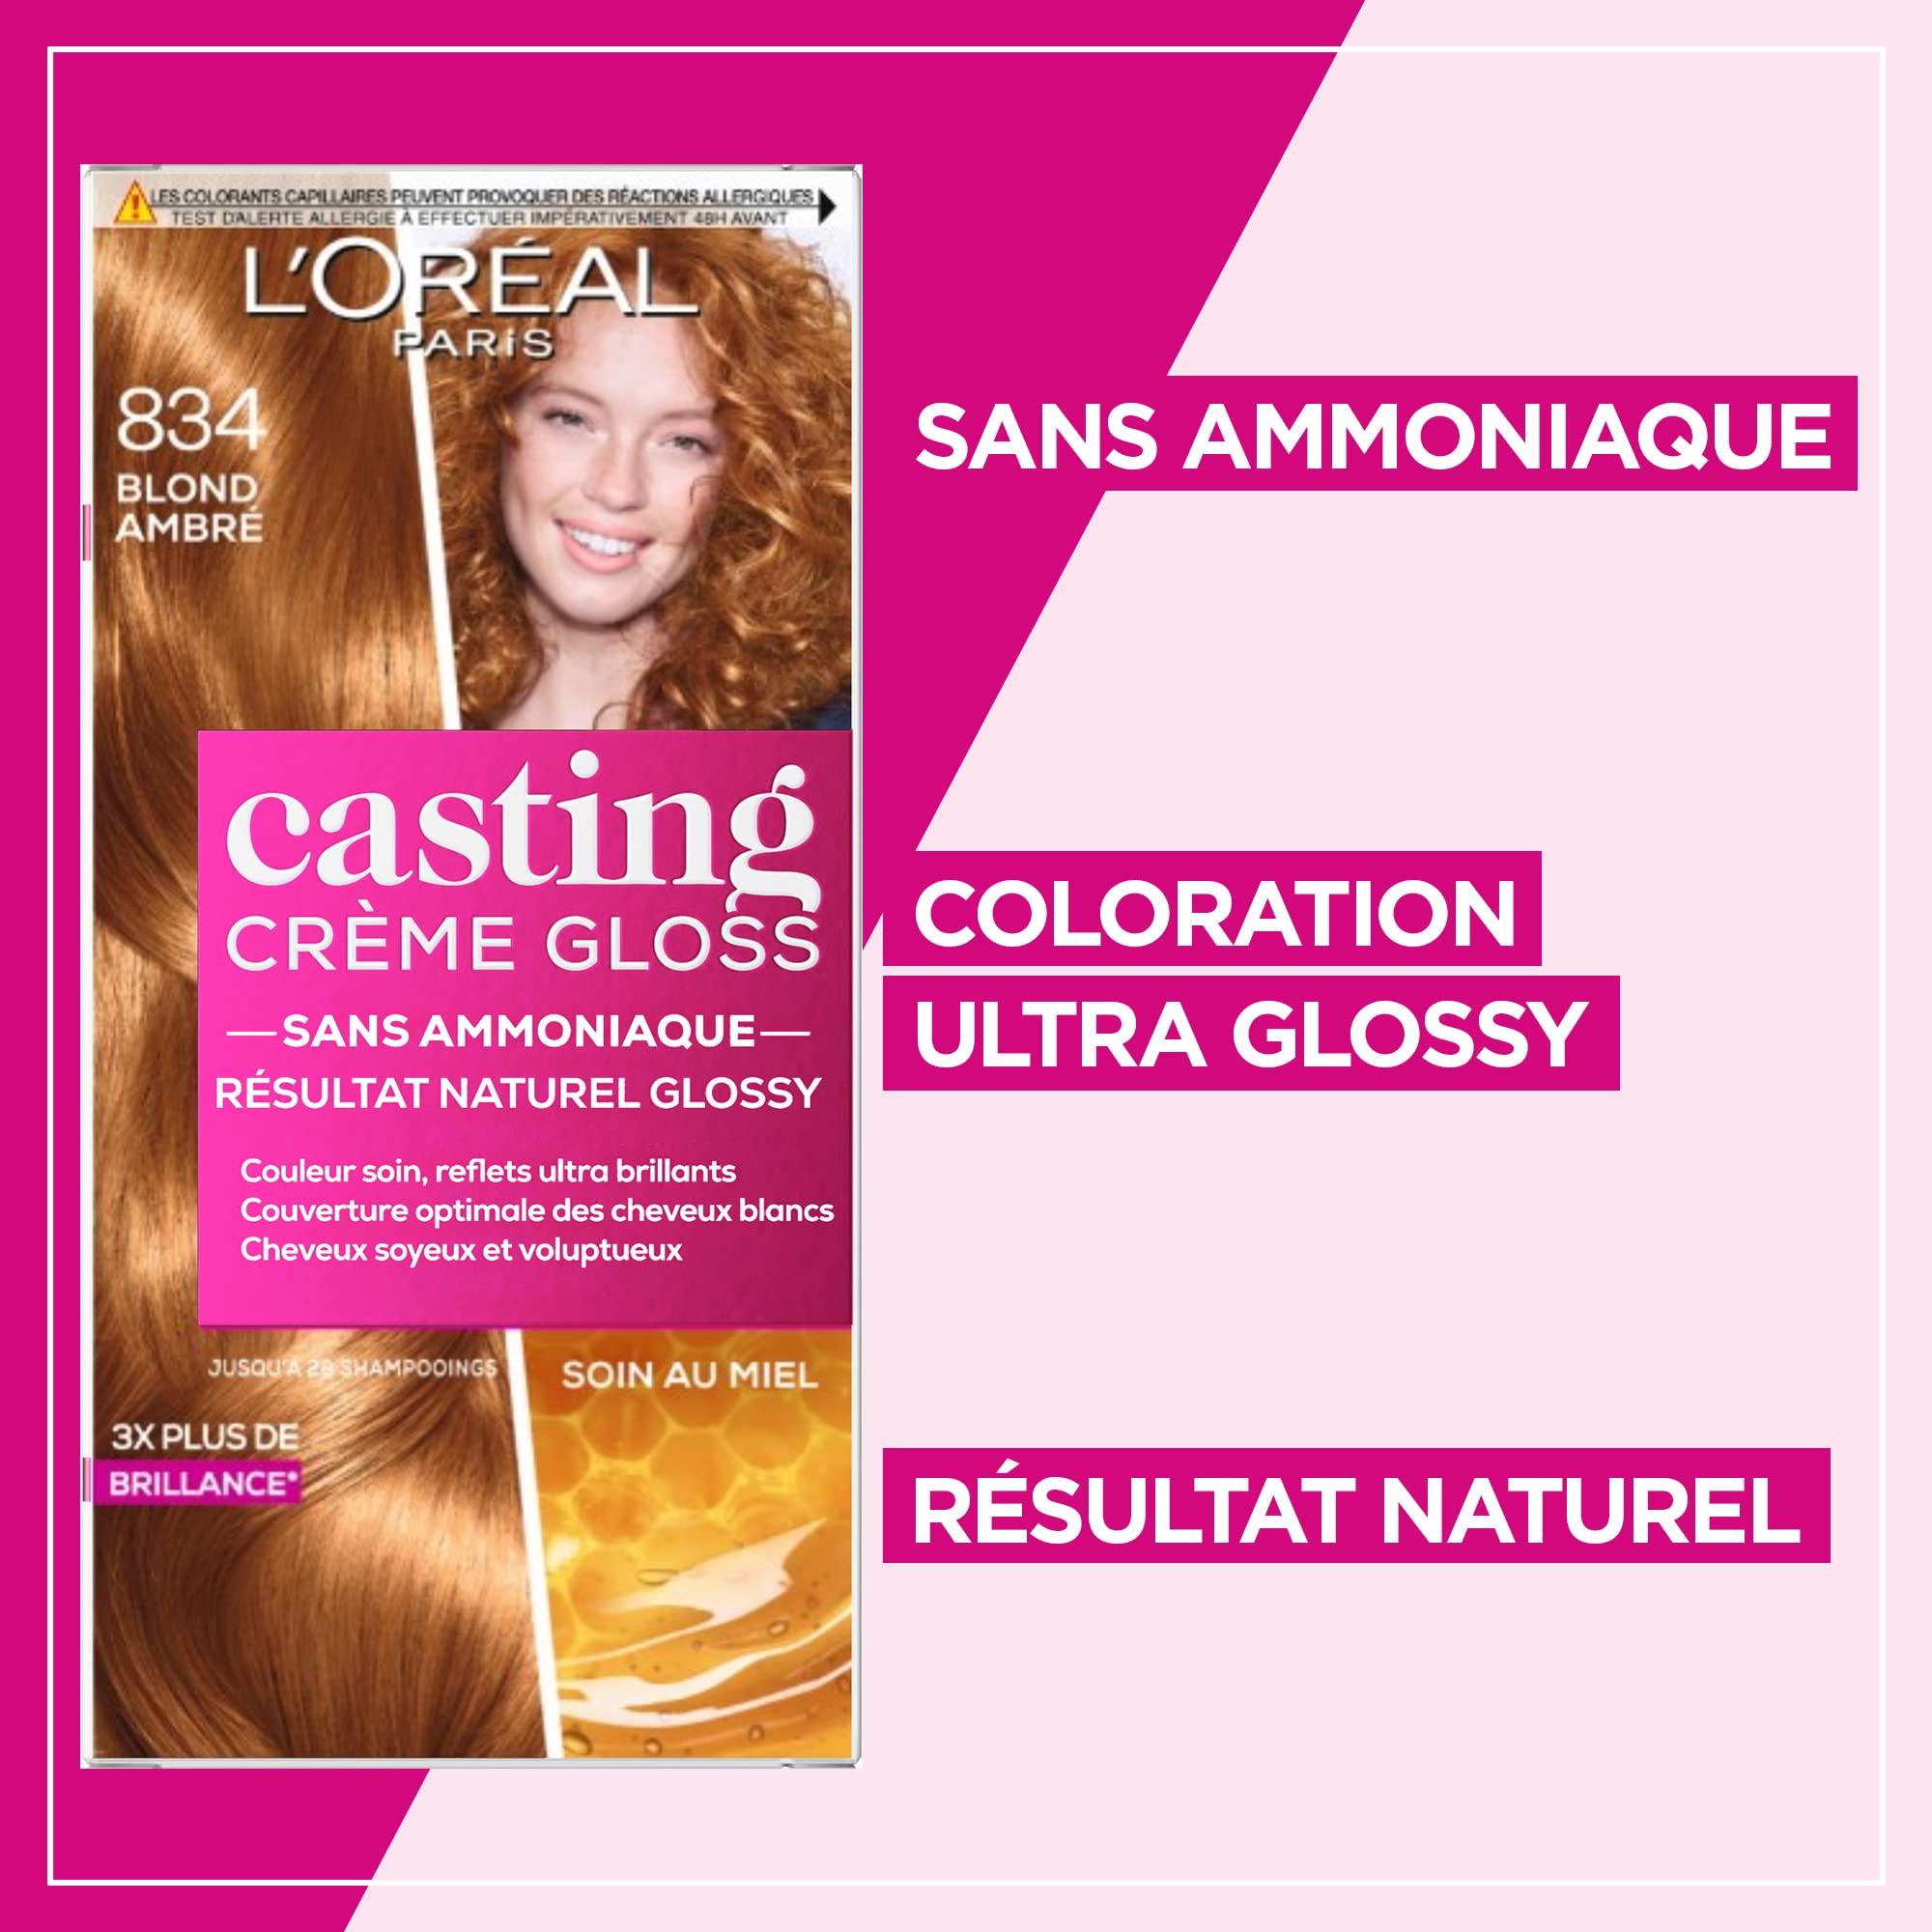 loreal casting creme gloss szampon koloryzujący bursztynowy blond 834